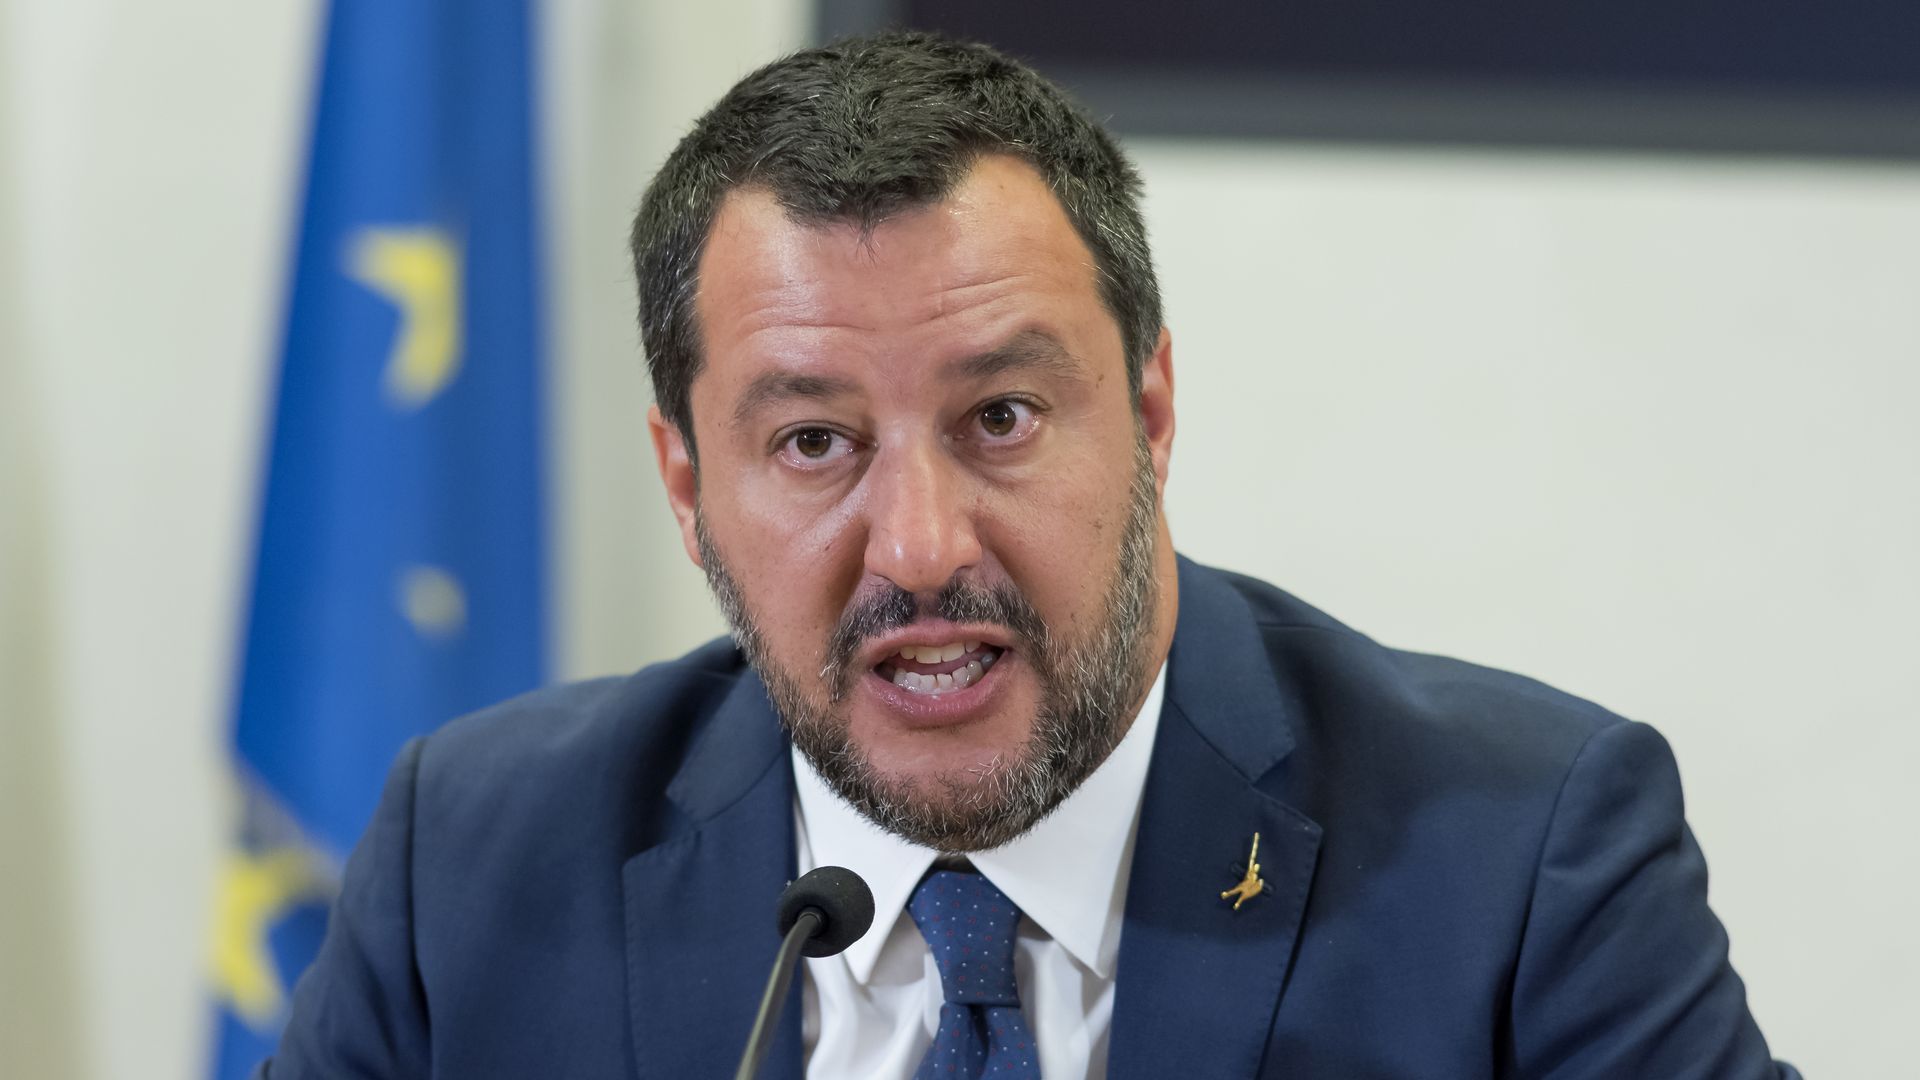 Matteo Salvini speaking